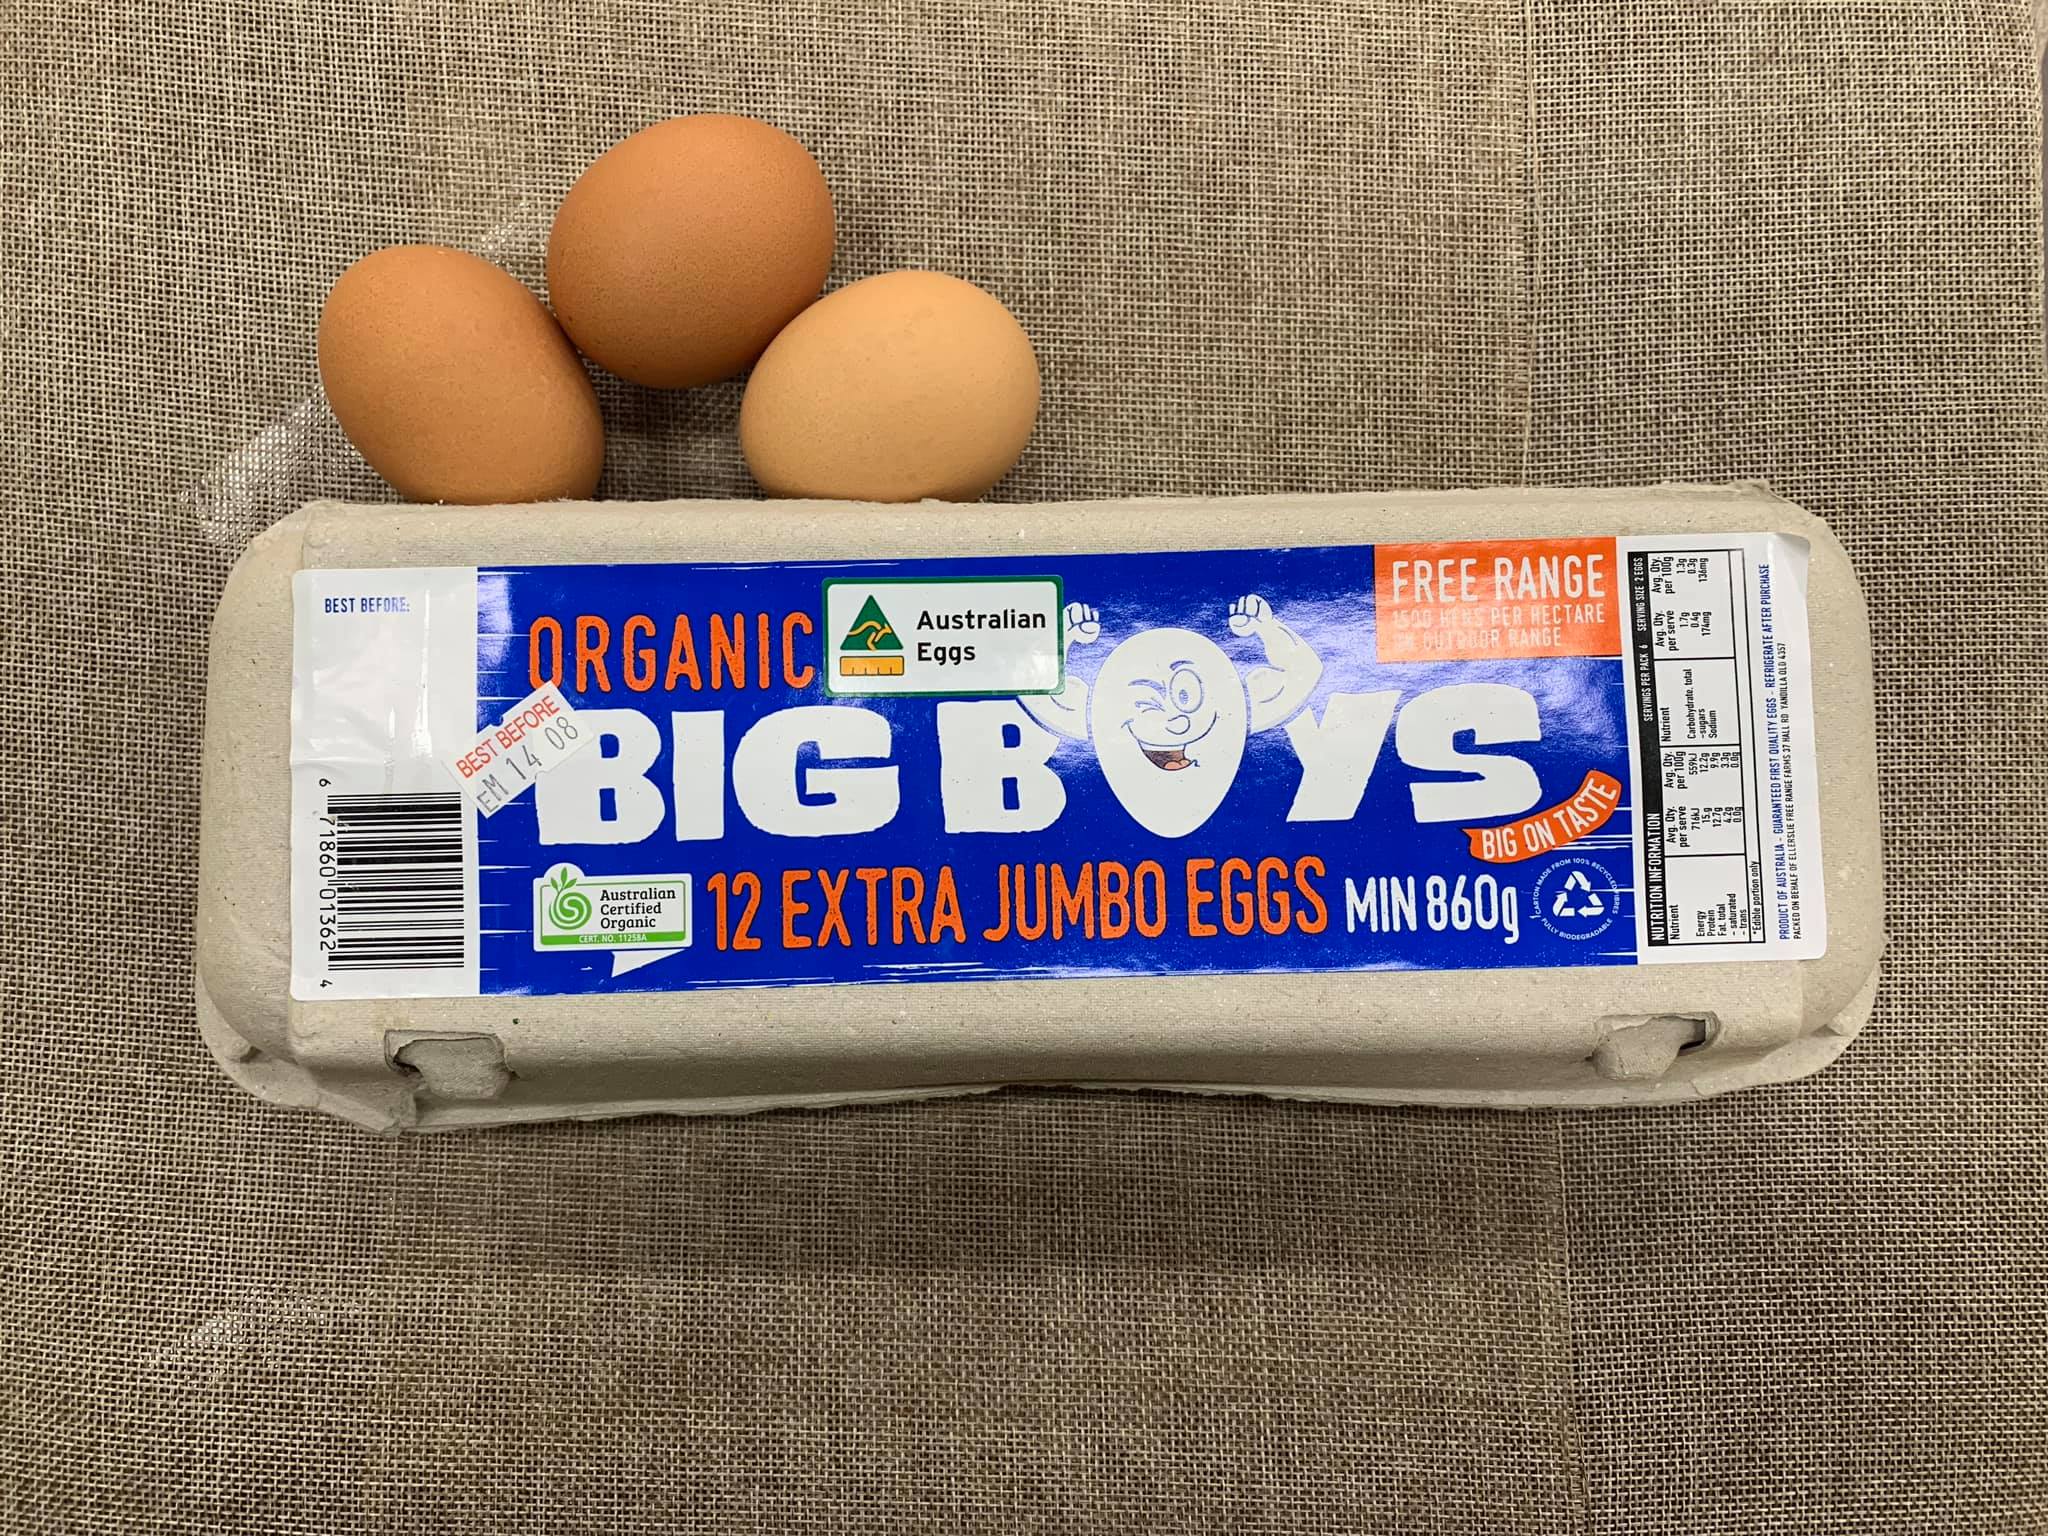 Big Boy Eggs